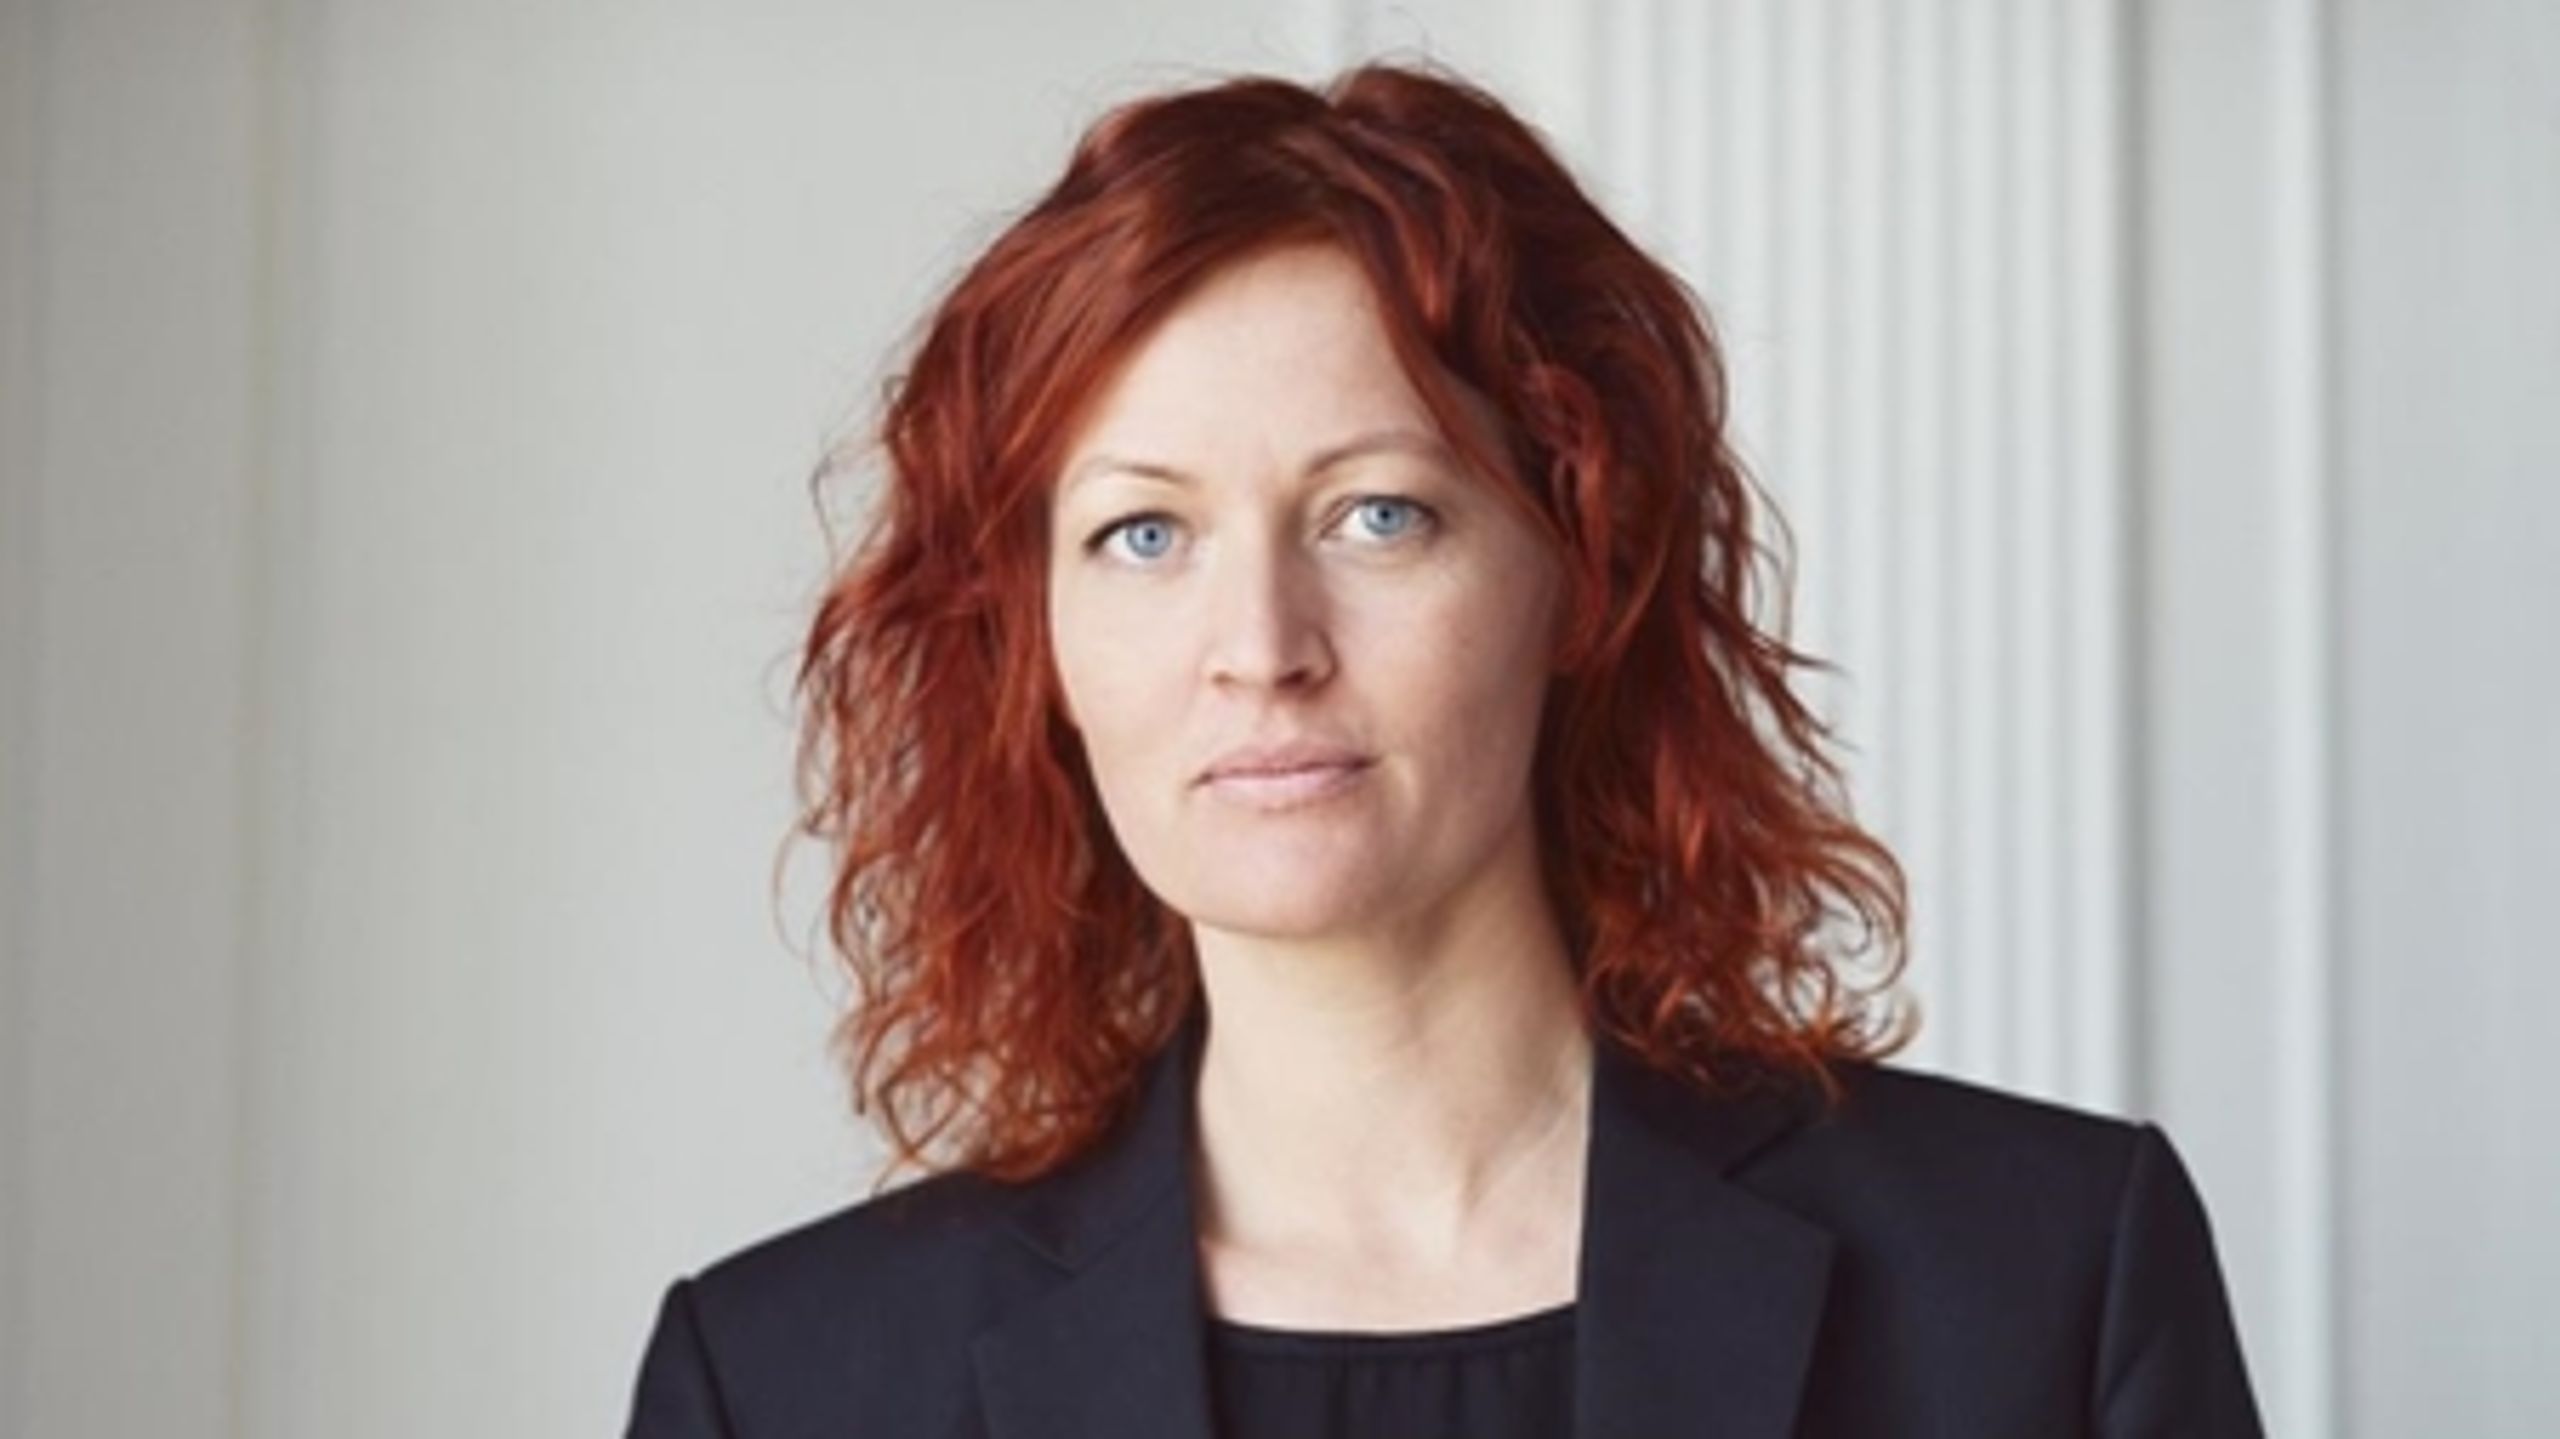 Mette Touborg vandt en overvældende sejr ved kommunalvalget, der sikrede hende endnu en periode som borgmester i Lejre Kommune.